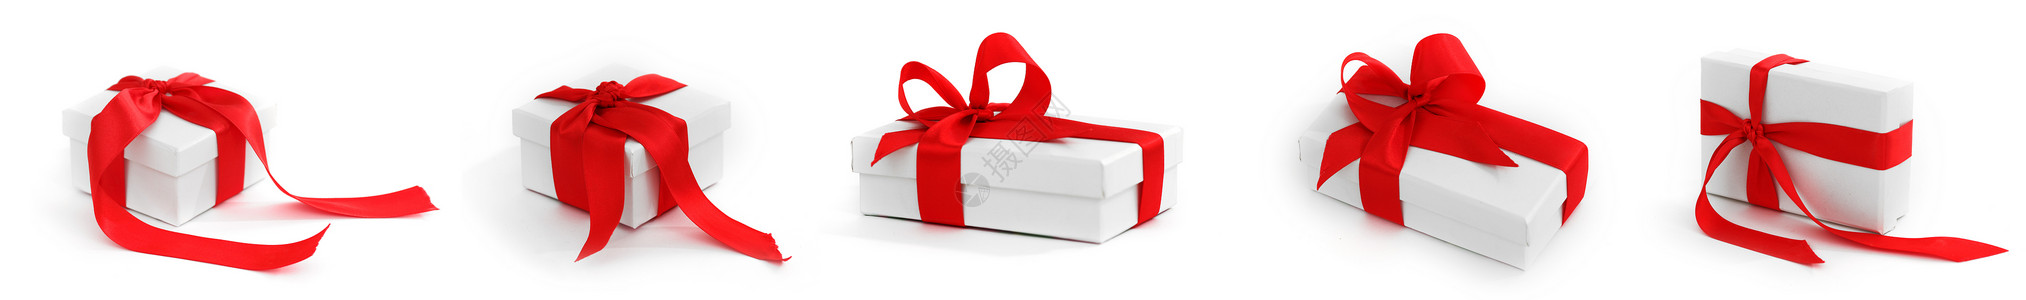 套白色盒子,用红色缎带蝴蝶结绑白色背景上圣诞节生日婚礼或情人节礼物白色礼品盒,用红结绑起背景图片